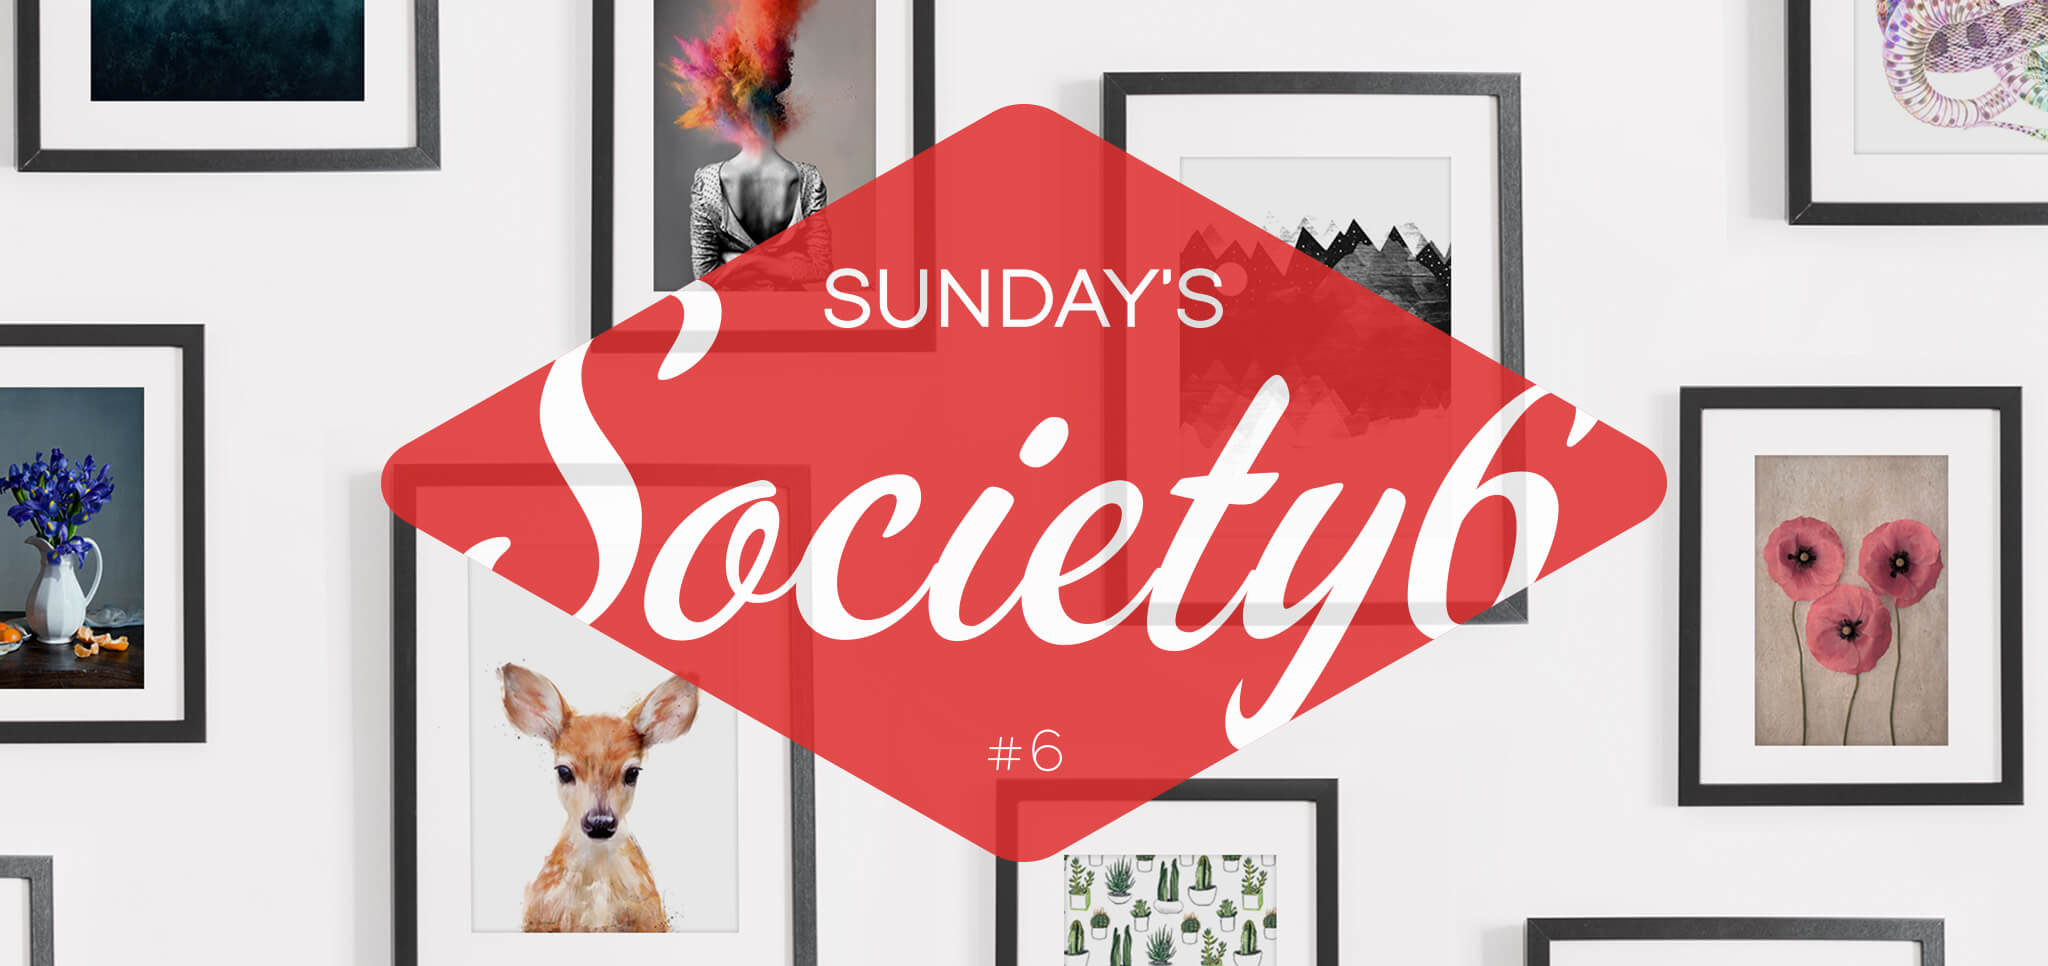 Sunday’s Society6 – #6